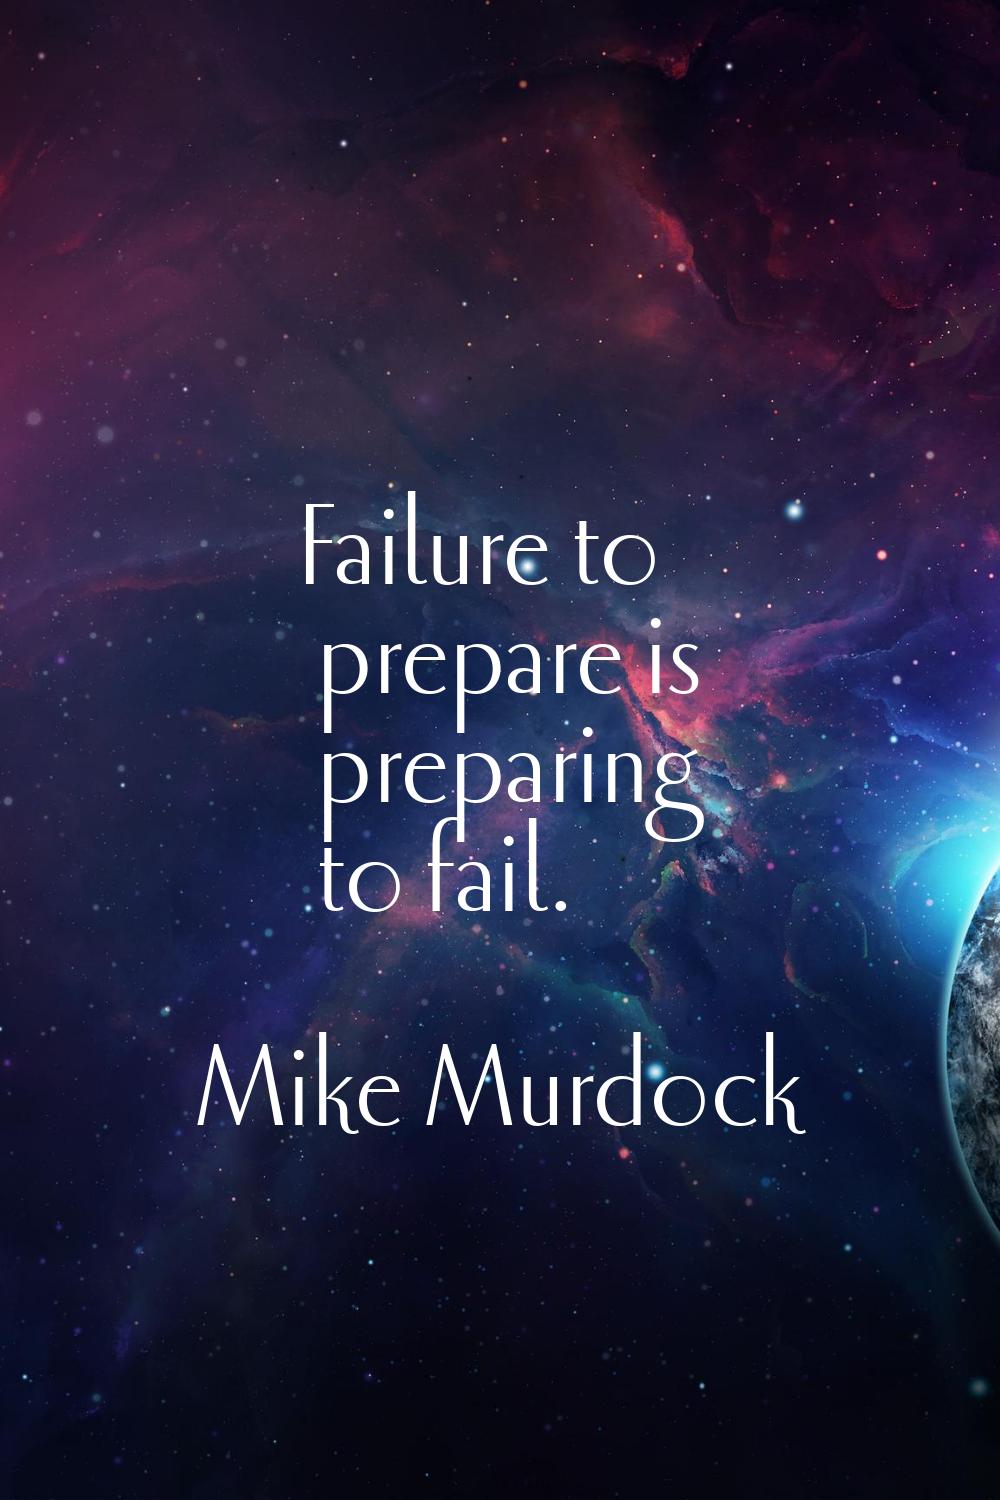 Failure to prepare is preparing to fail.